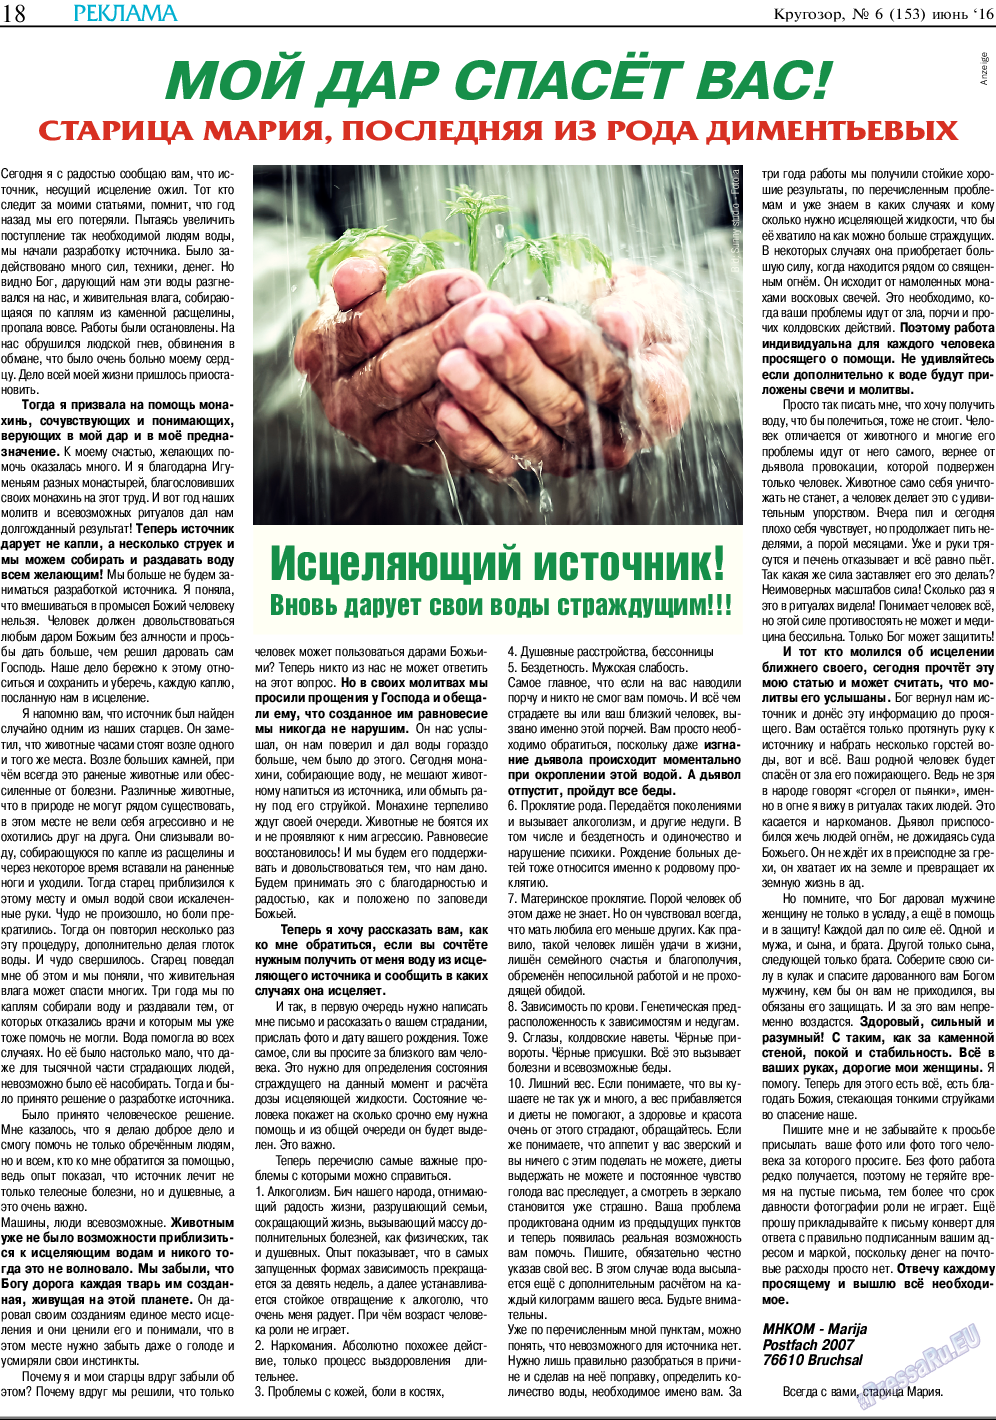 Кругозор, газета. 2016 №6 стр.18